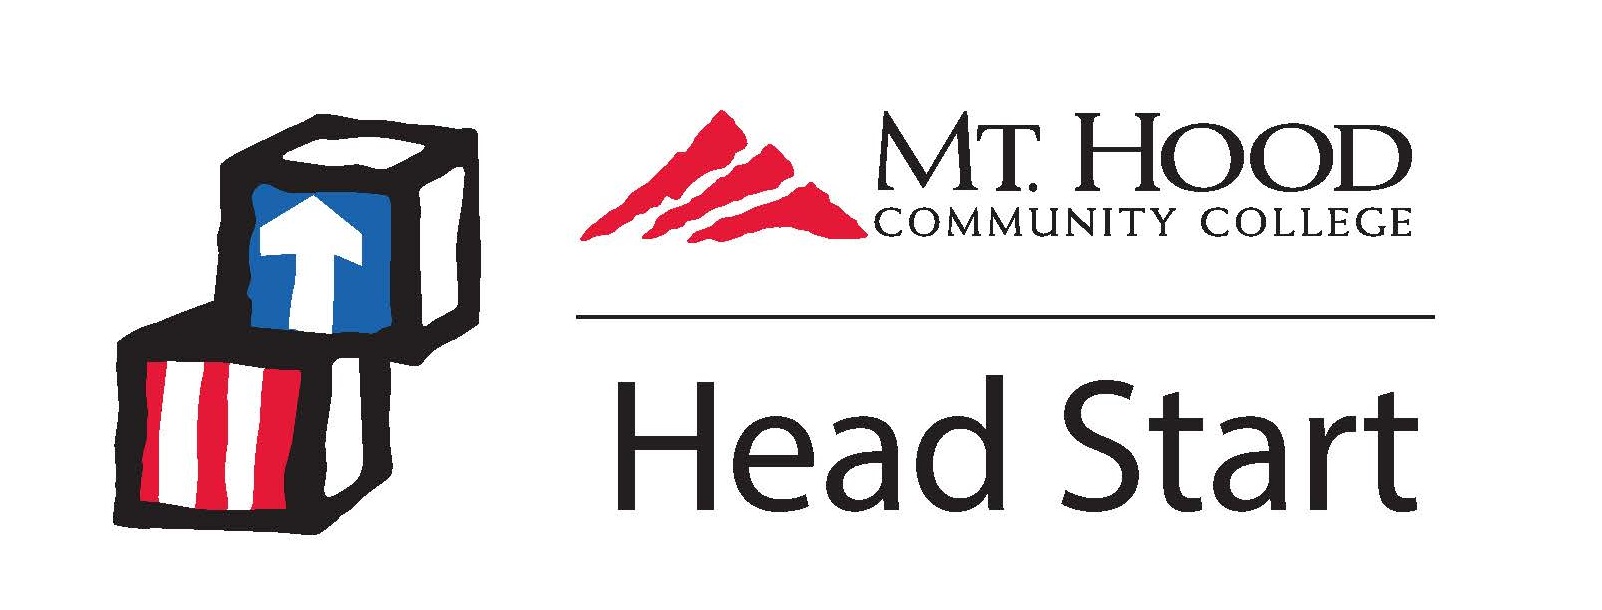 MHCC Head Start